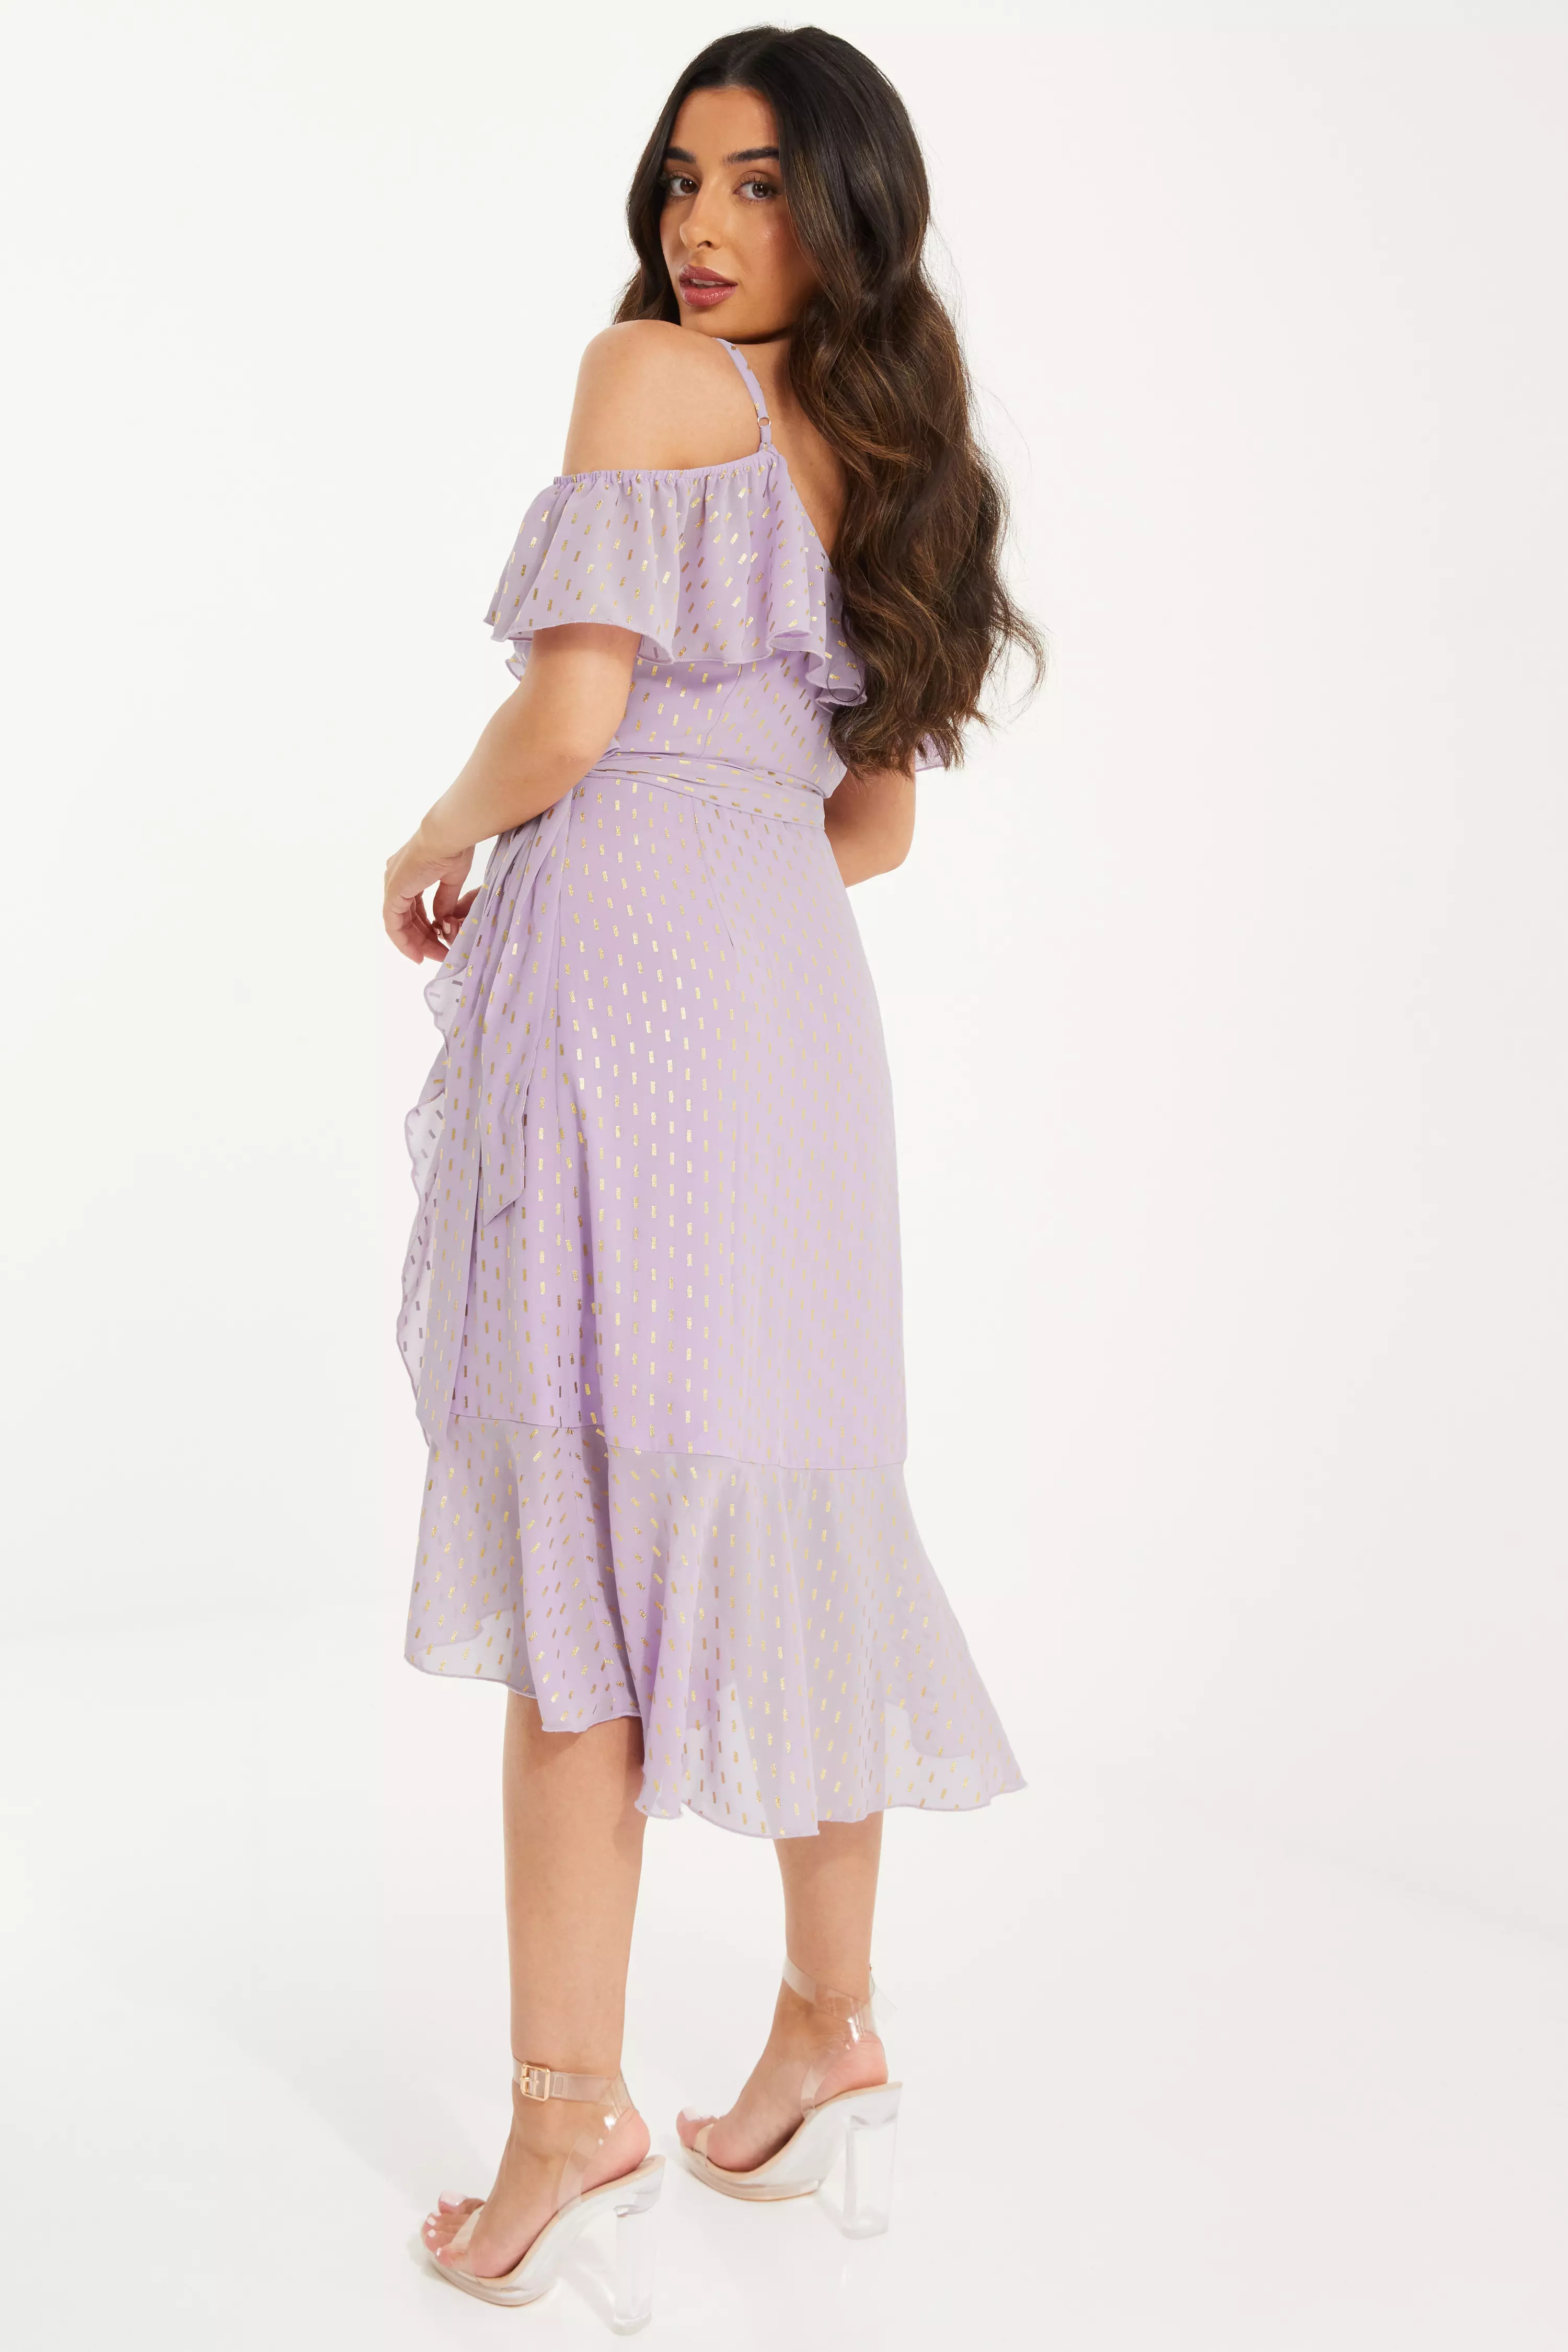 Petite Lilac Chiffon Foil Midi Dress - QUIZ Clothing